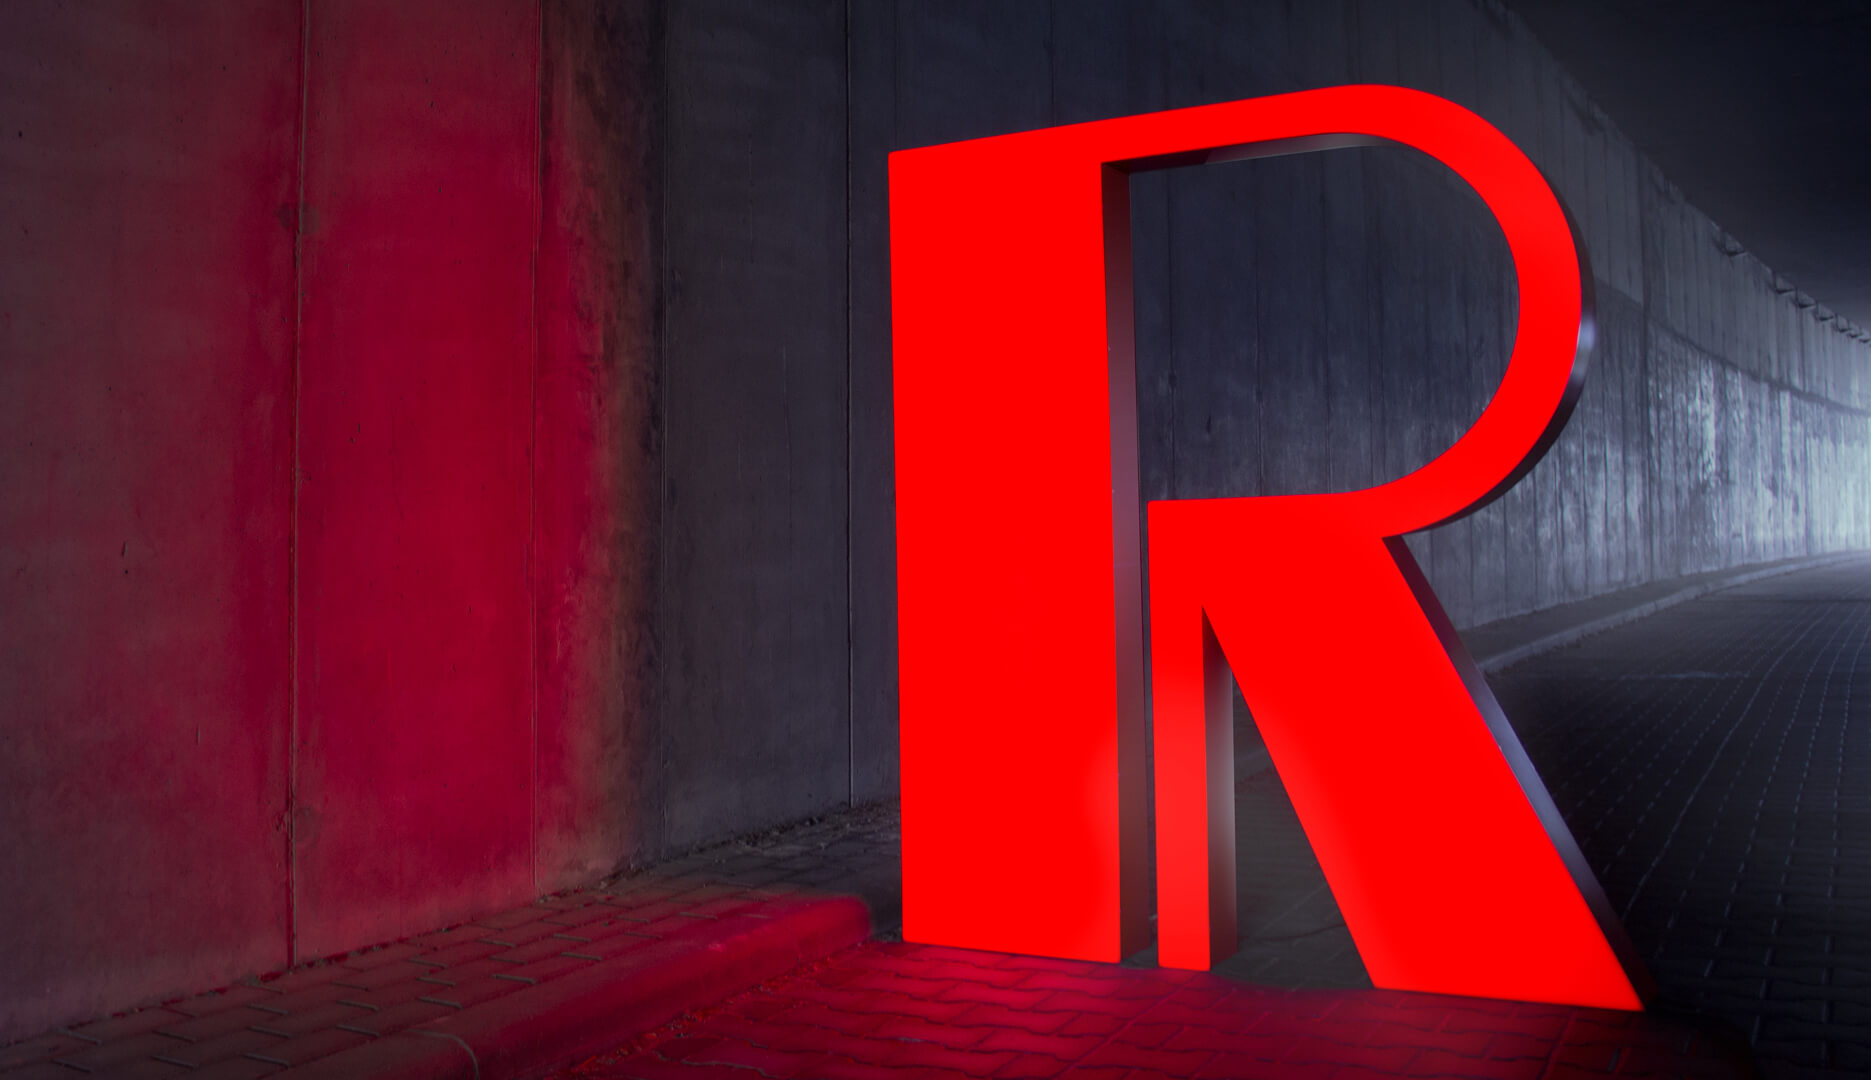 Czerwona litera R - Wielkoformatowa litera R w kolorze czerwonym, podświetlana LED.